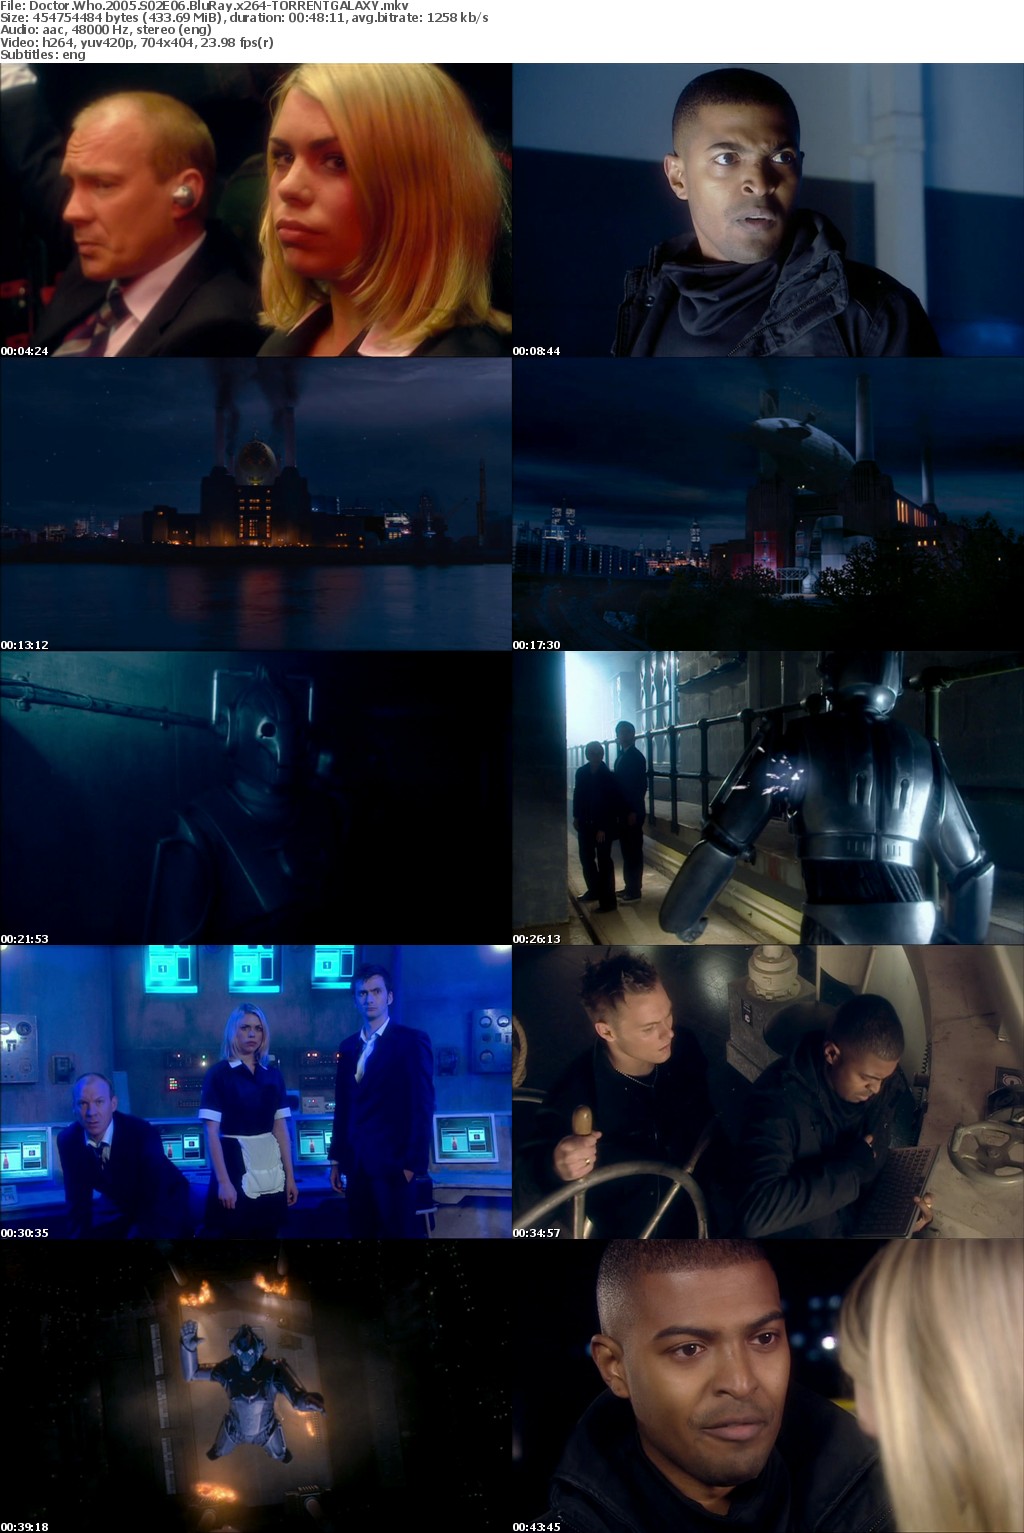 Doctor Who 2005 S02E06 BluRay x264-GALAXY